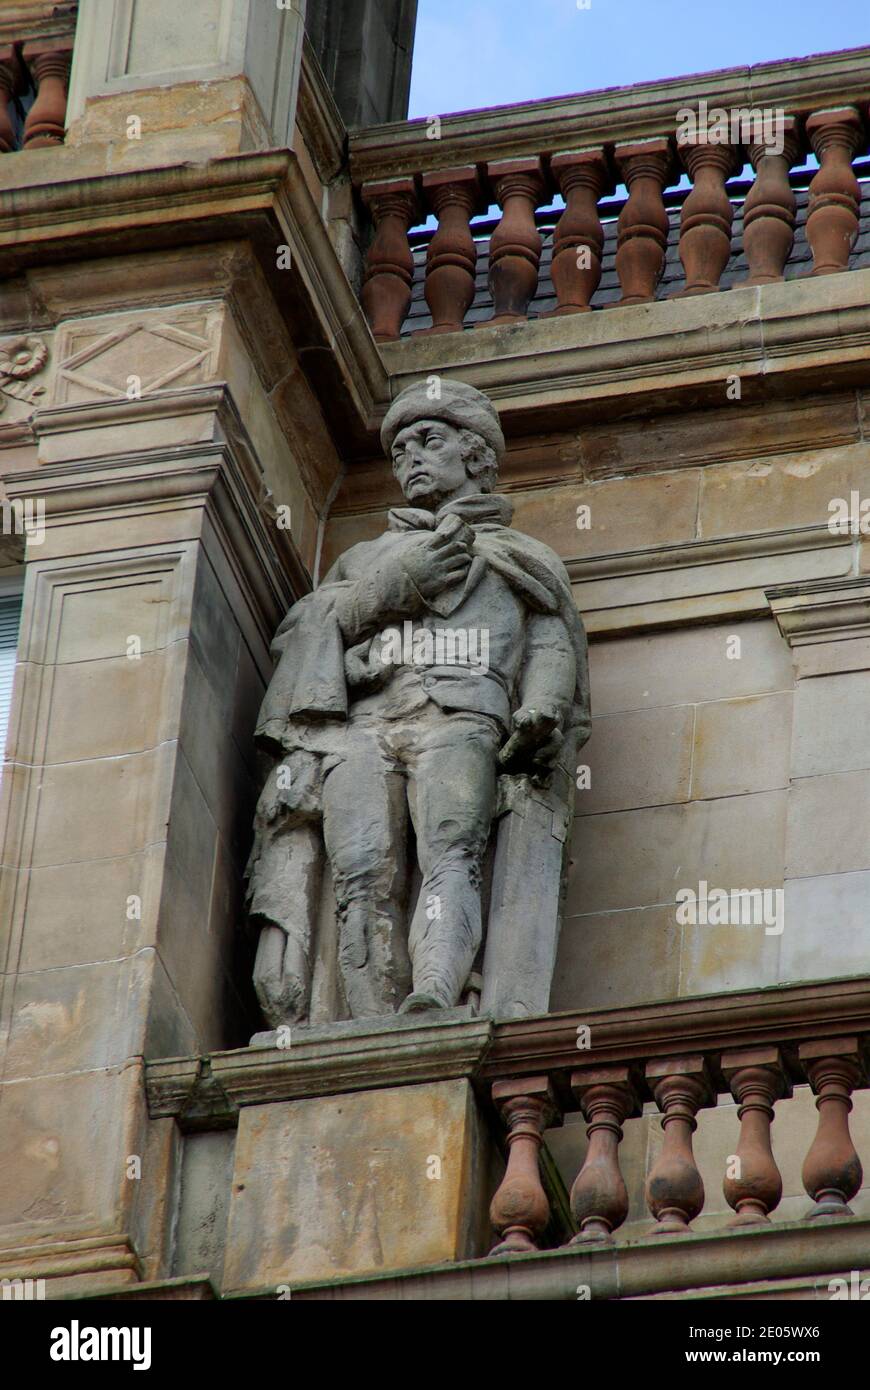 Figura esculpida en el antiguo edificio del Glasgow Herald Foto de stock